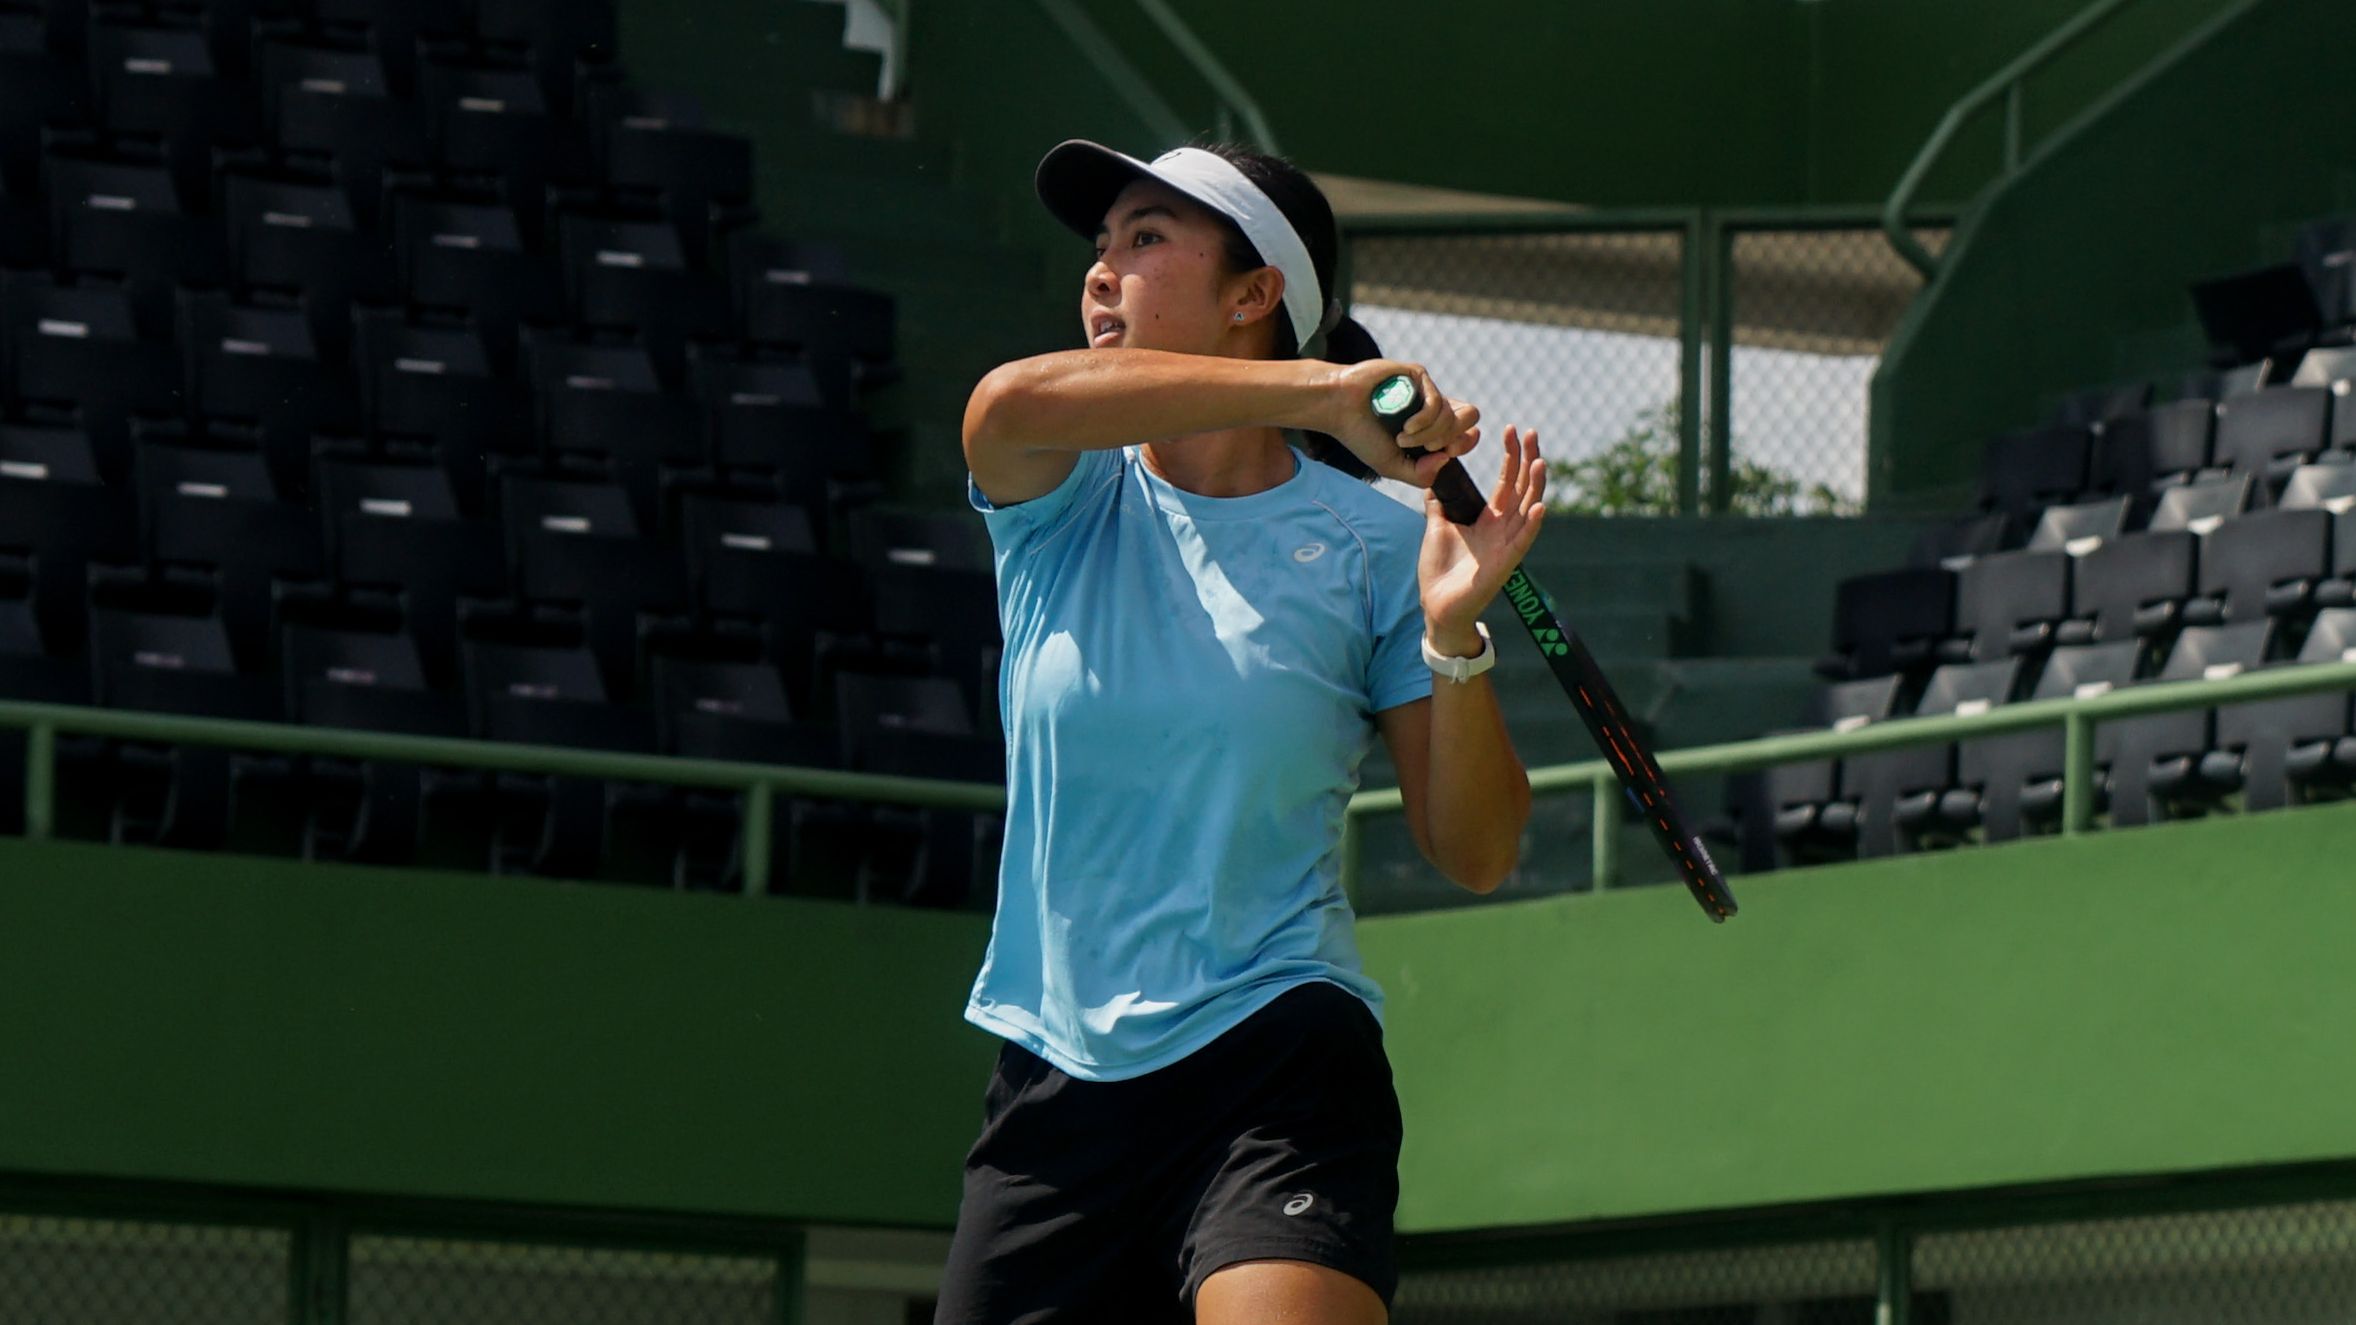 Petenis putri Indonesia, Aldila Sutjiadi, tengah menjalani karier di luar negeri dengan mengikuti sejumlah turnamen ITF maupun WTA.